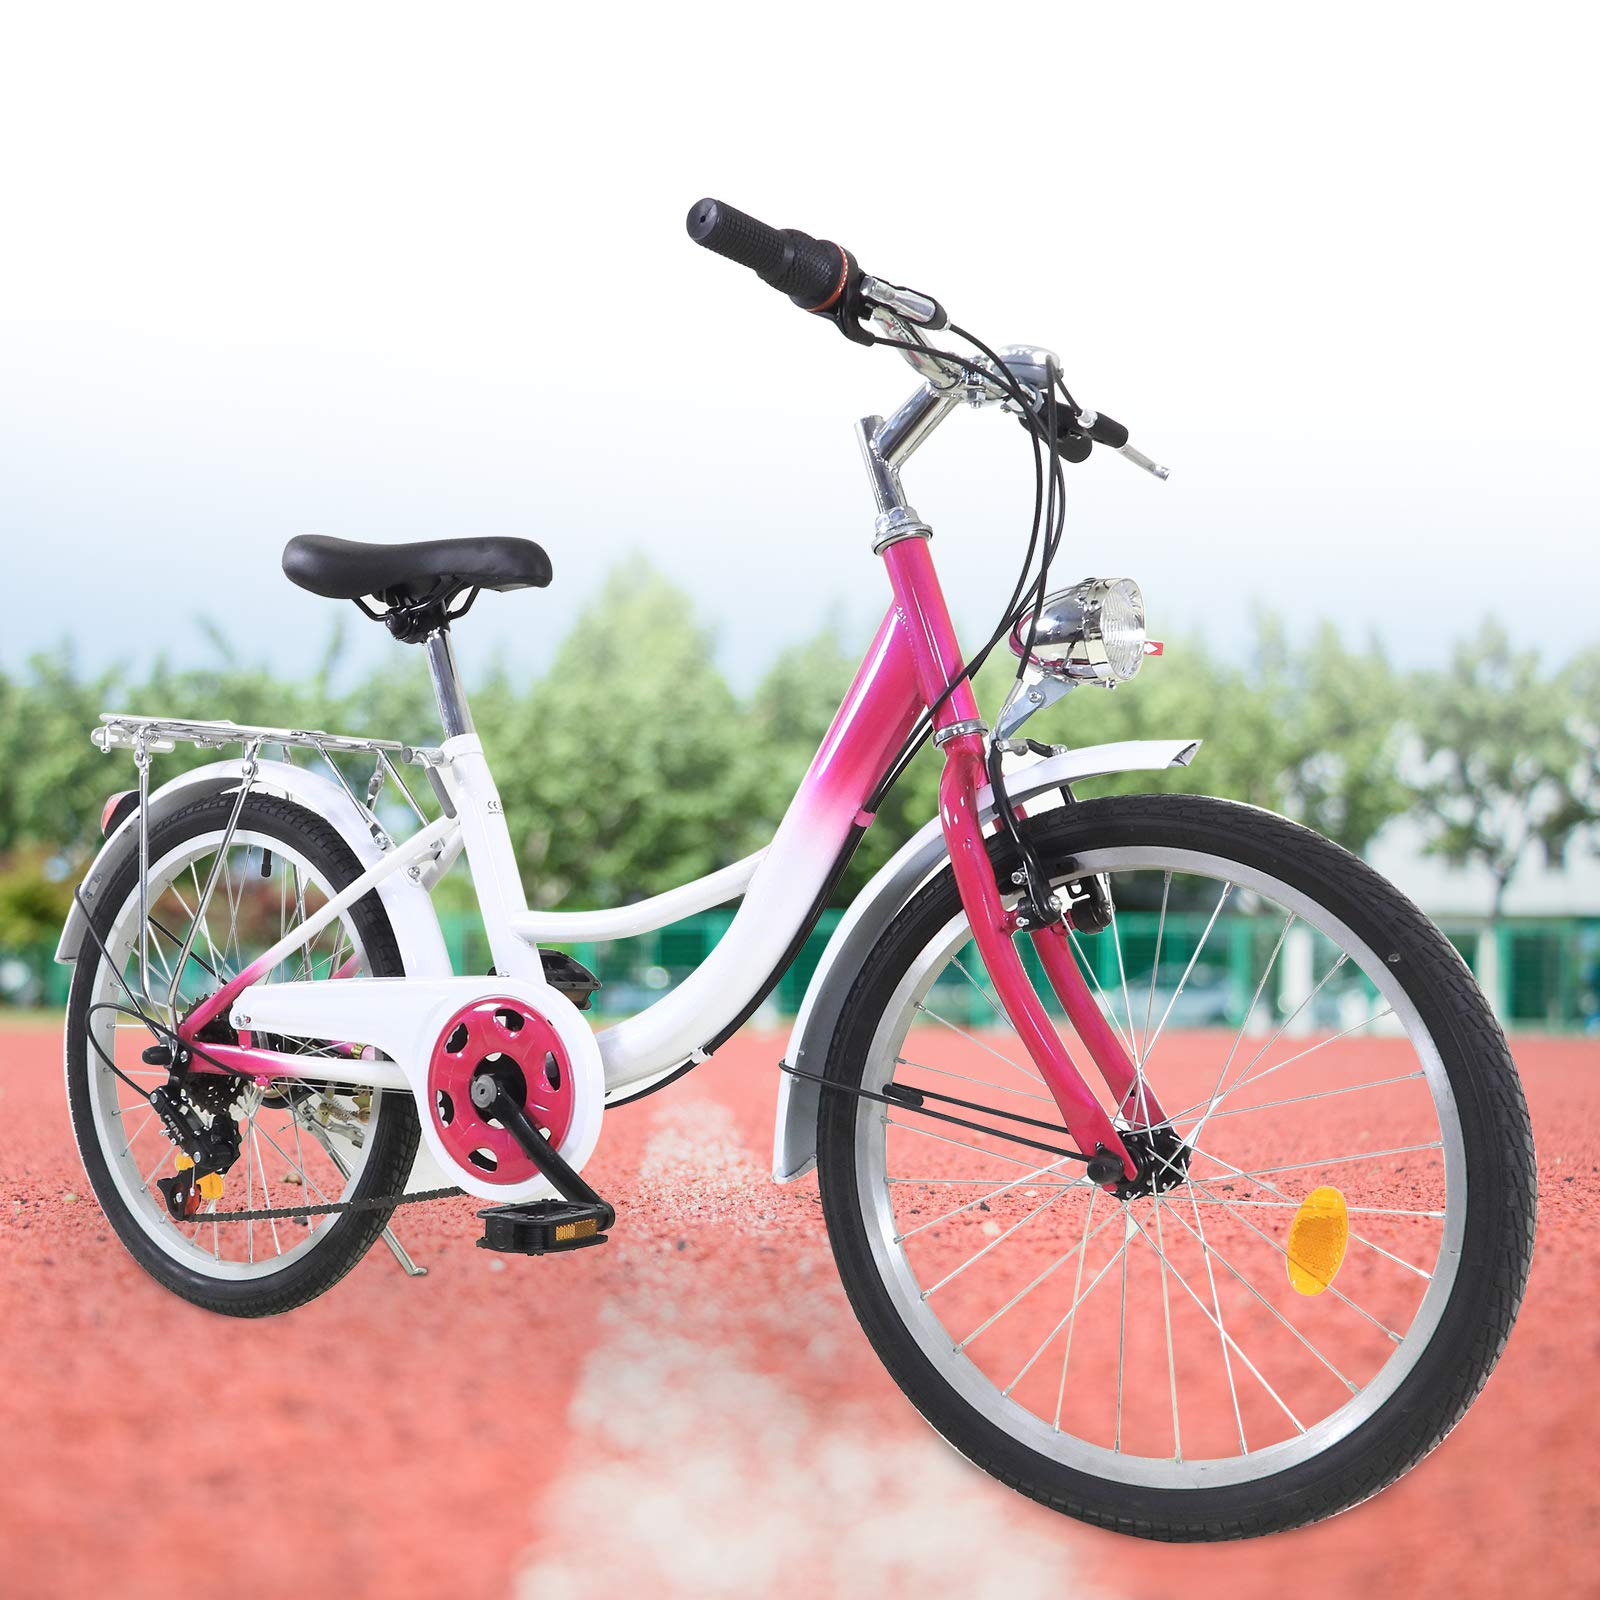 Vélo pour enfant 20 pouces 6 vitesses - Pour garçons et filles - Pour 12-16 ans - Rose et blanc - Économie d'énergie et protection de l'environnement